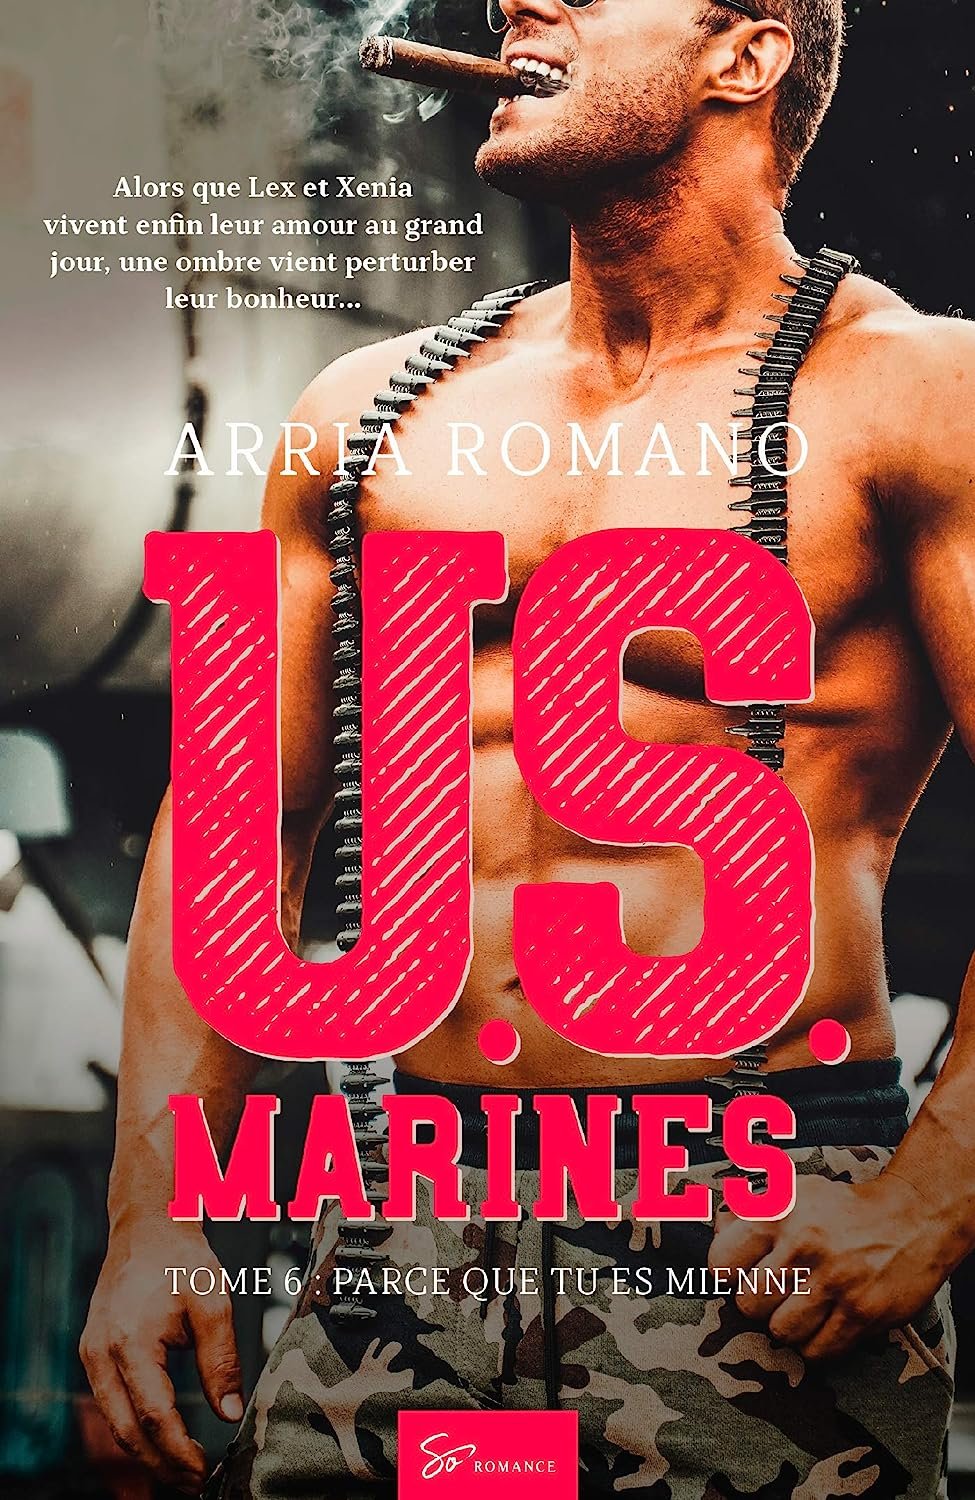 Arria Romano – U.S. Marines, Tome 6 Parce que tu es mienne